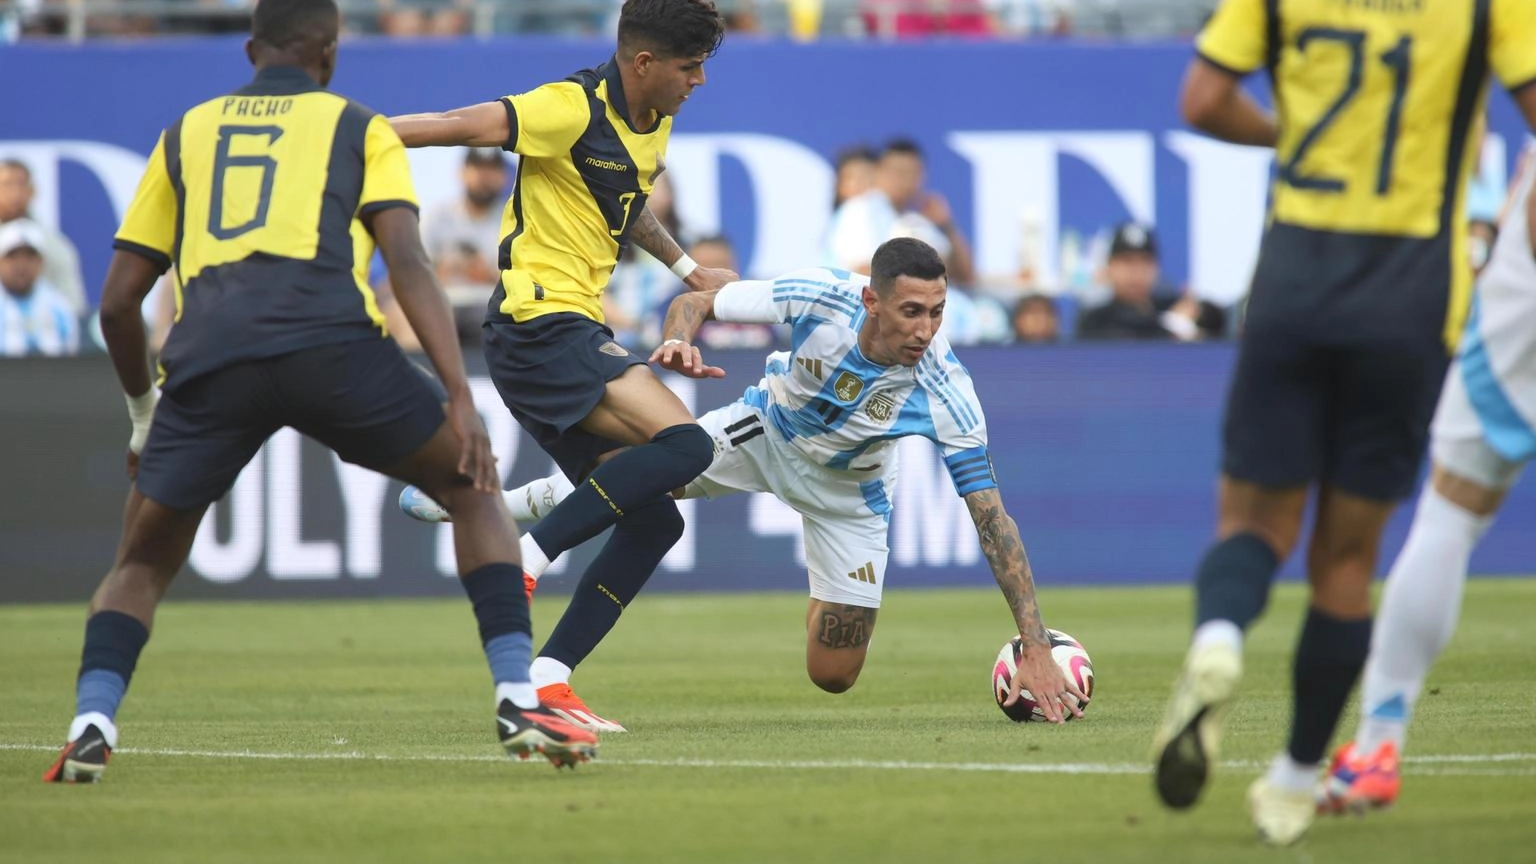 Calcio: Argentina-Ecuador 1-0 in amichevole, gol di Di Maria